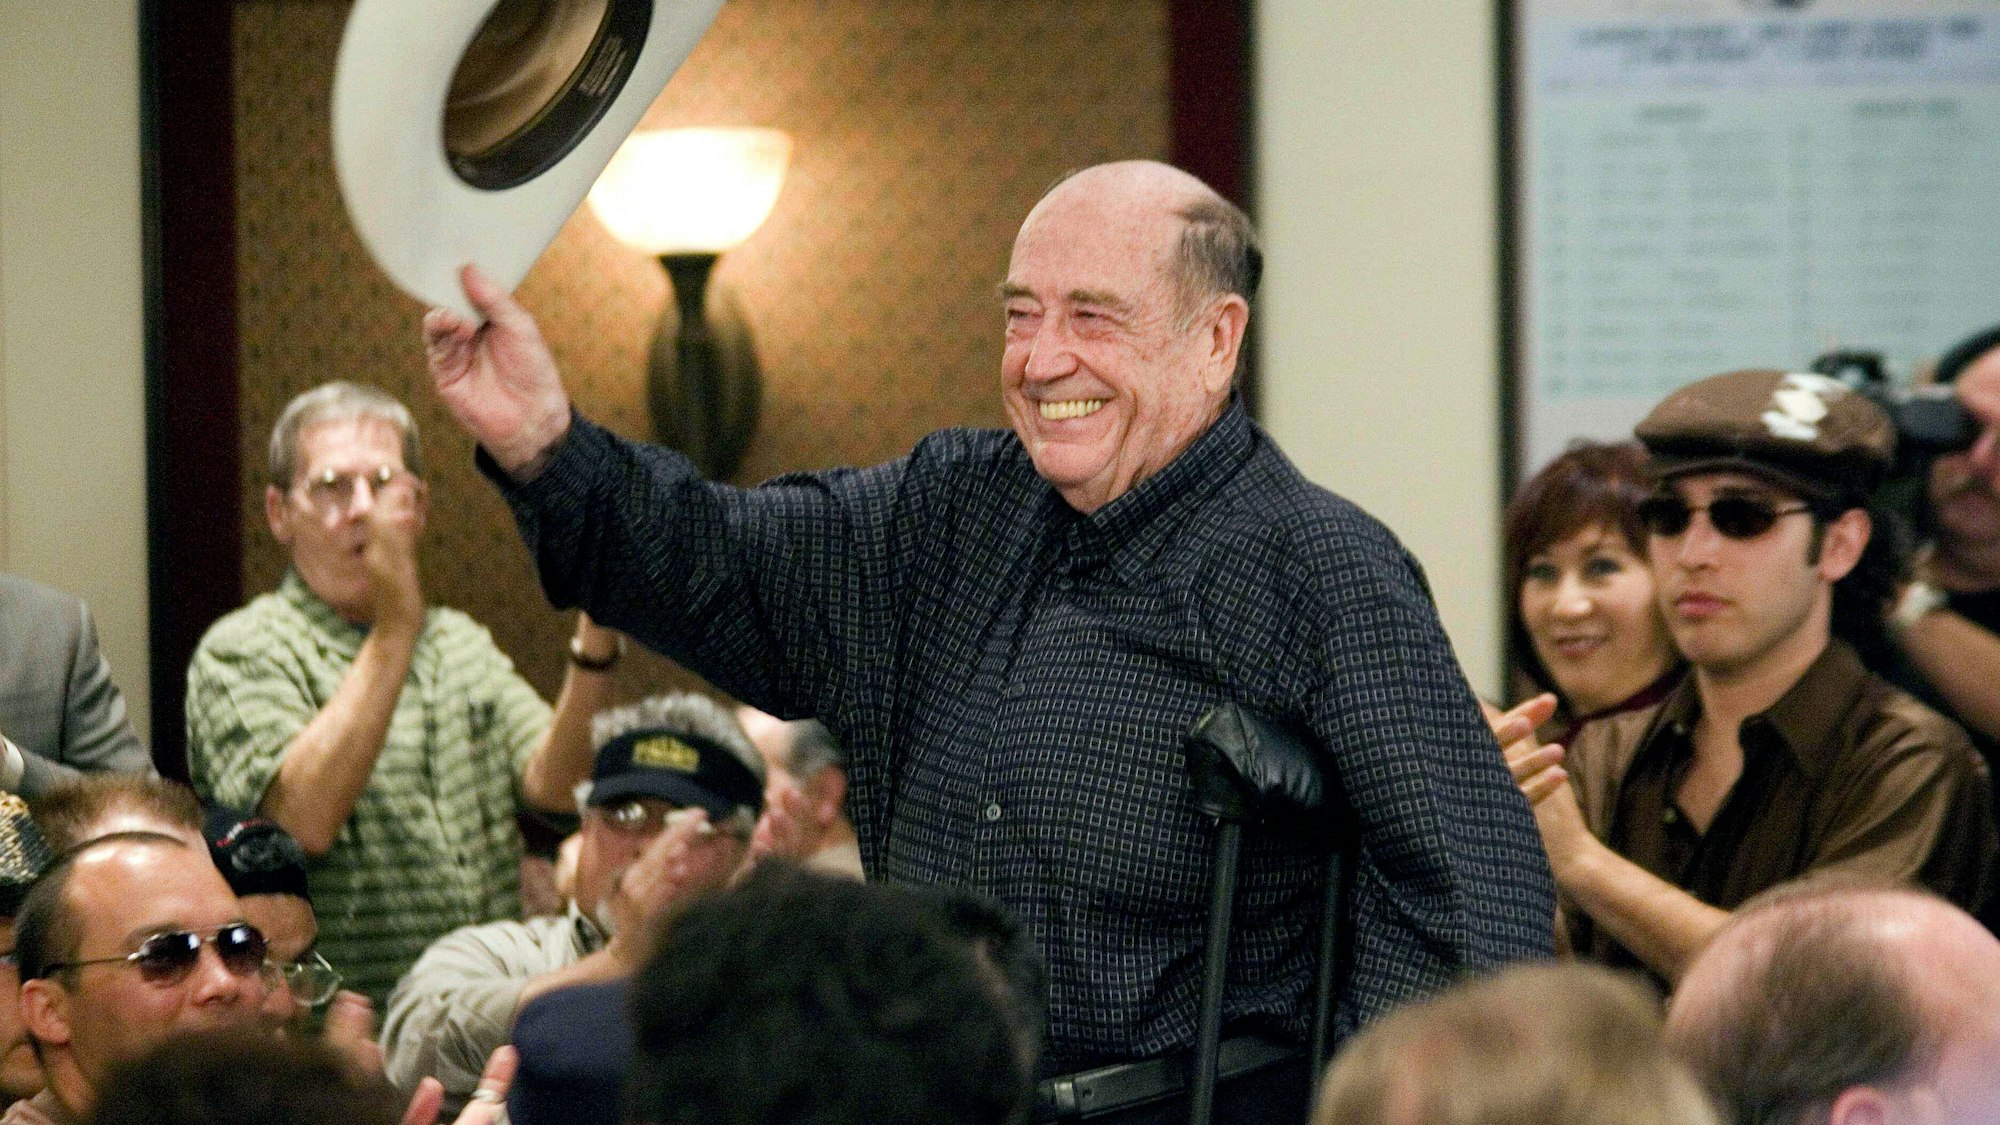 Doyle Brunson, genannt „Texas Dolly“, ist tot. Er gilt als eine der größten Poker-Legenden und prägte das Spiel über Jahrzehnte. Er wurde 89 Jahre alt. (Archivbild)